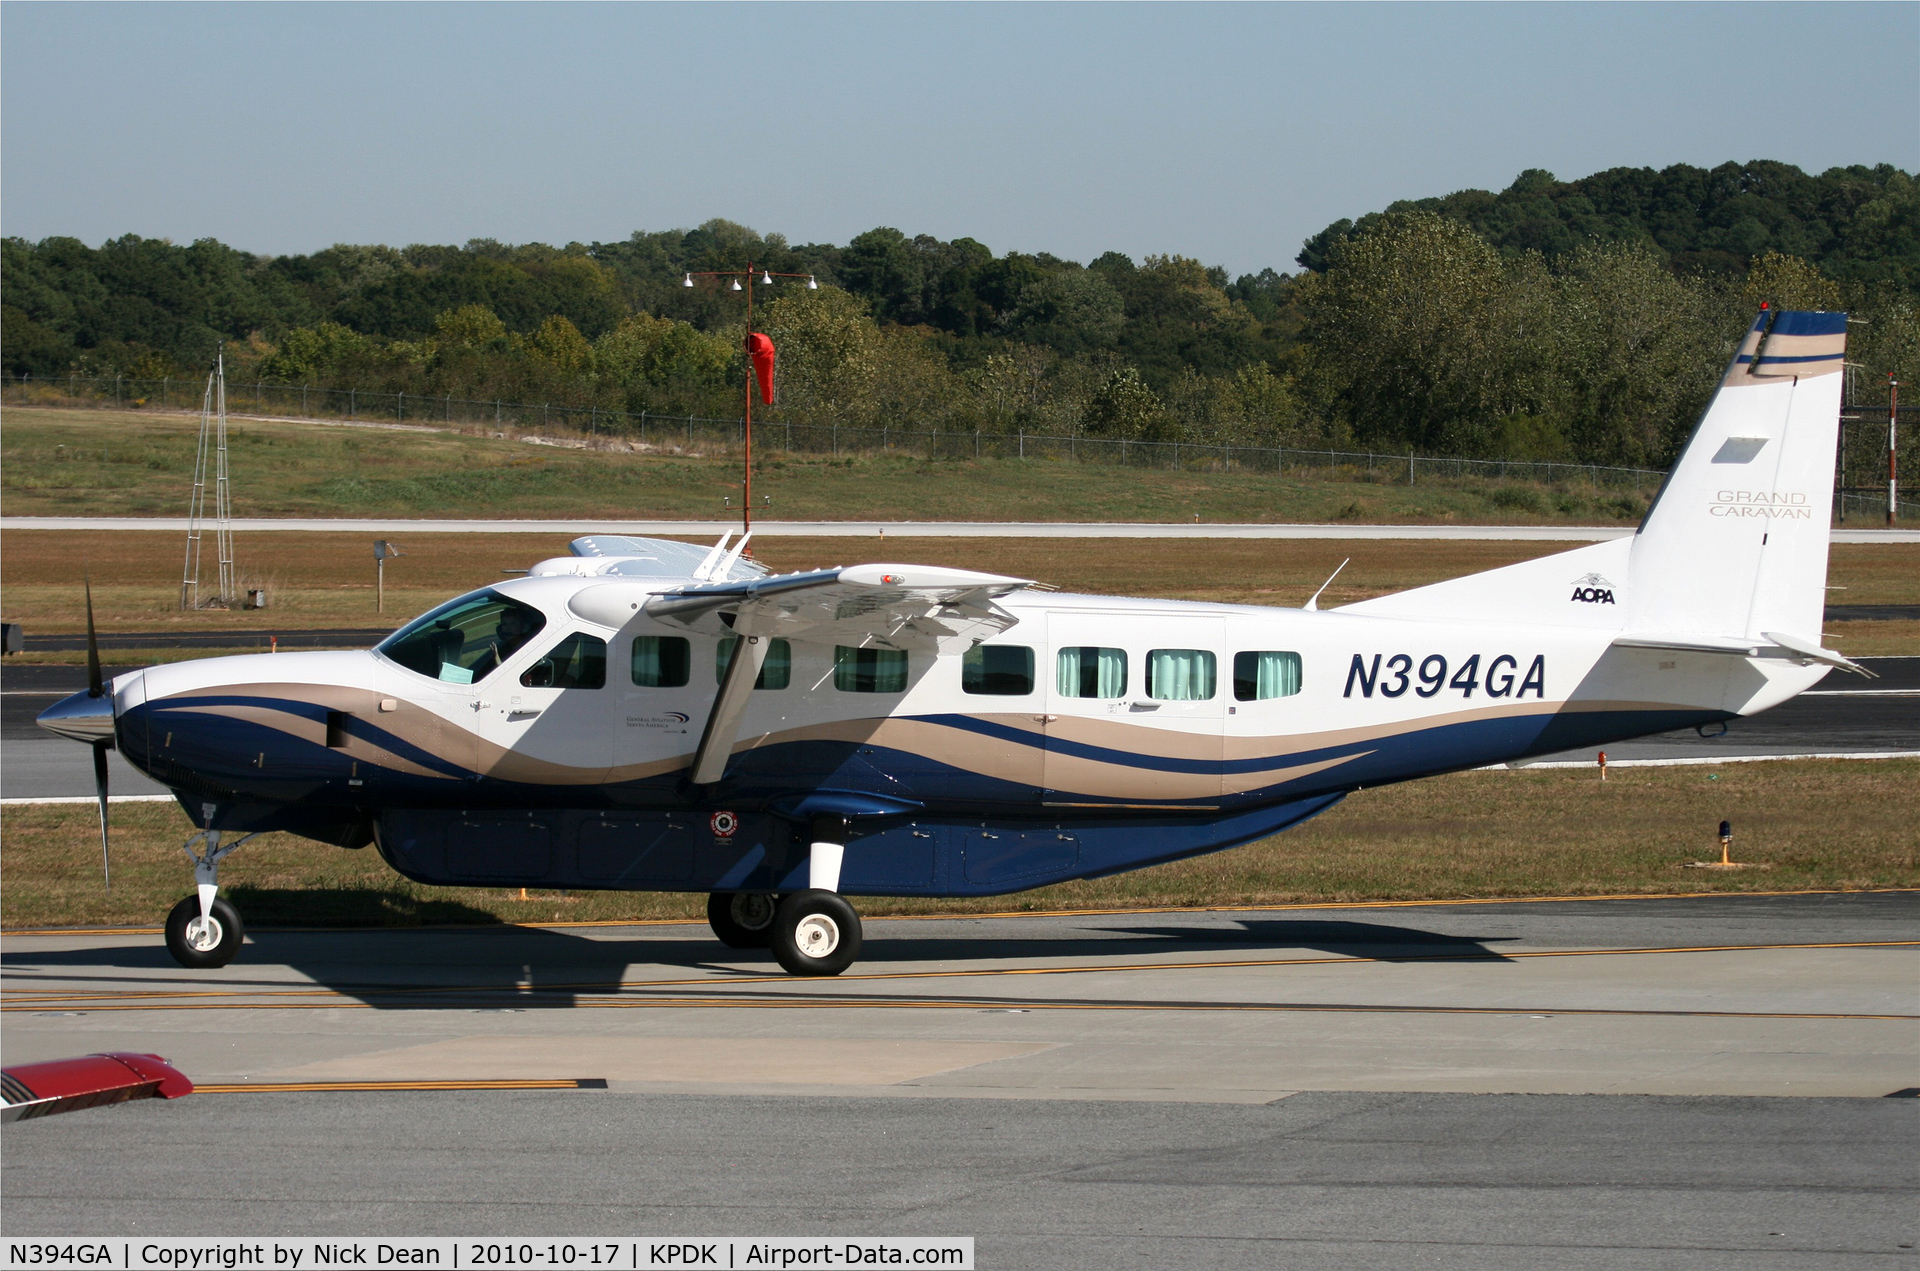 N394GA, 2008 Cessna 208B Grand Caravan C/N 208B2028, KPDK NBAA 2010